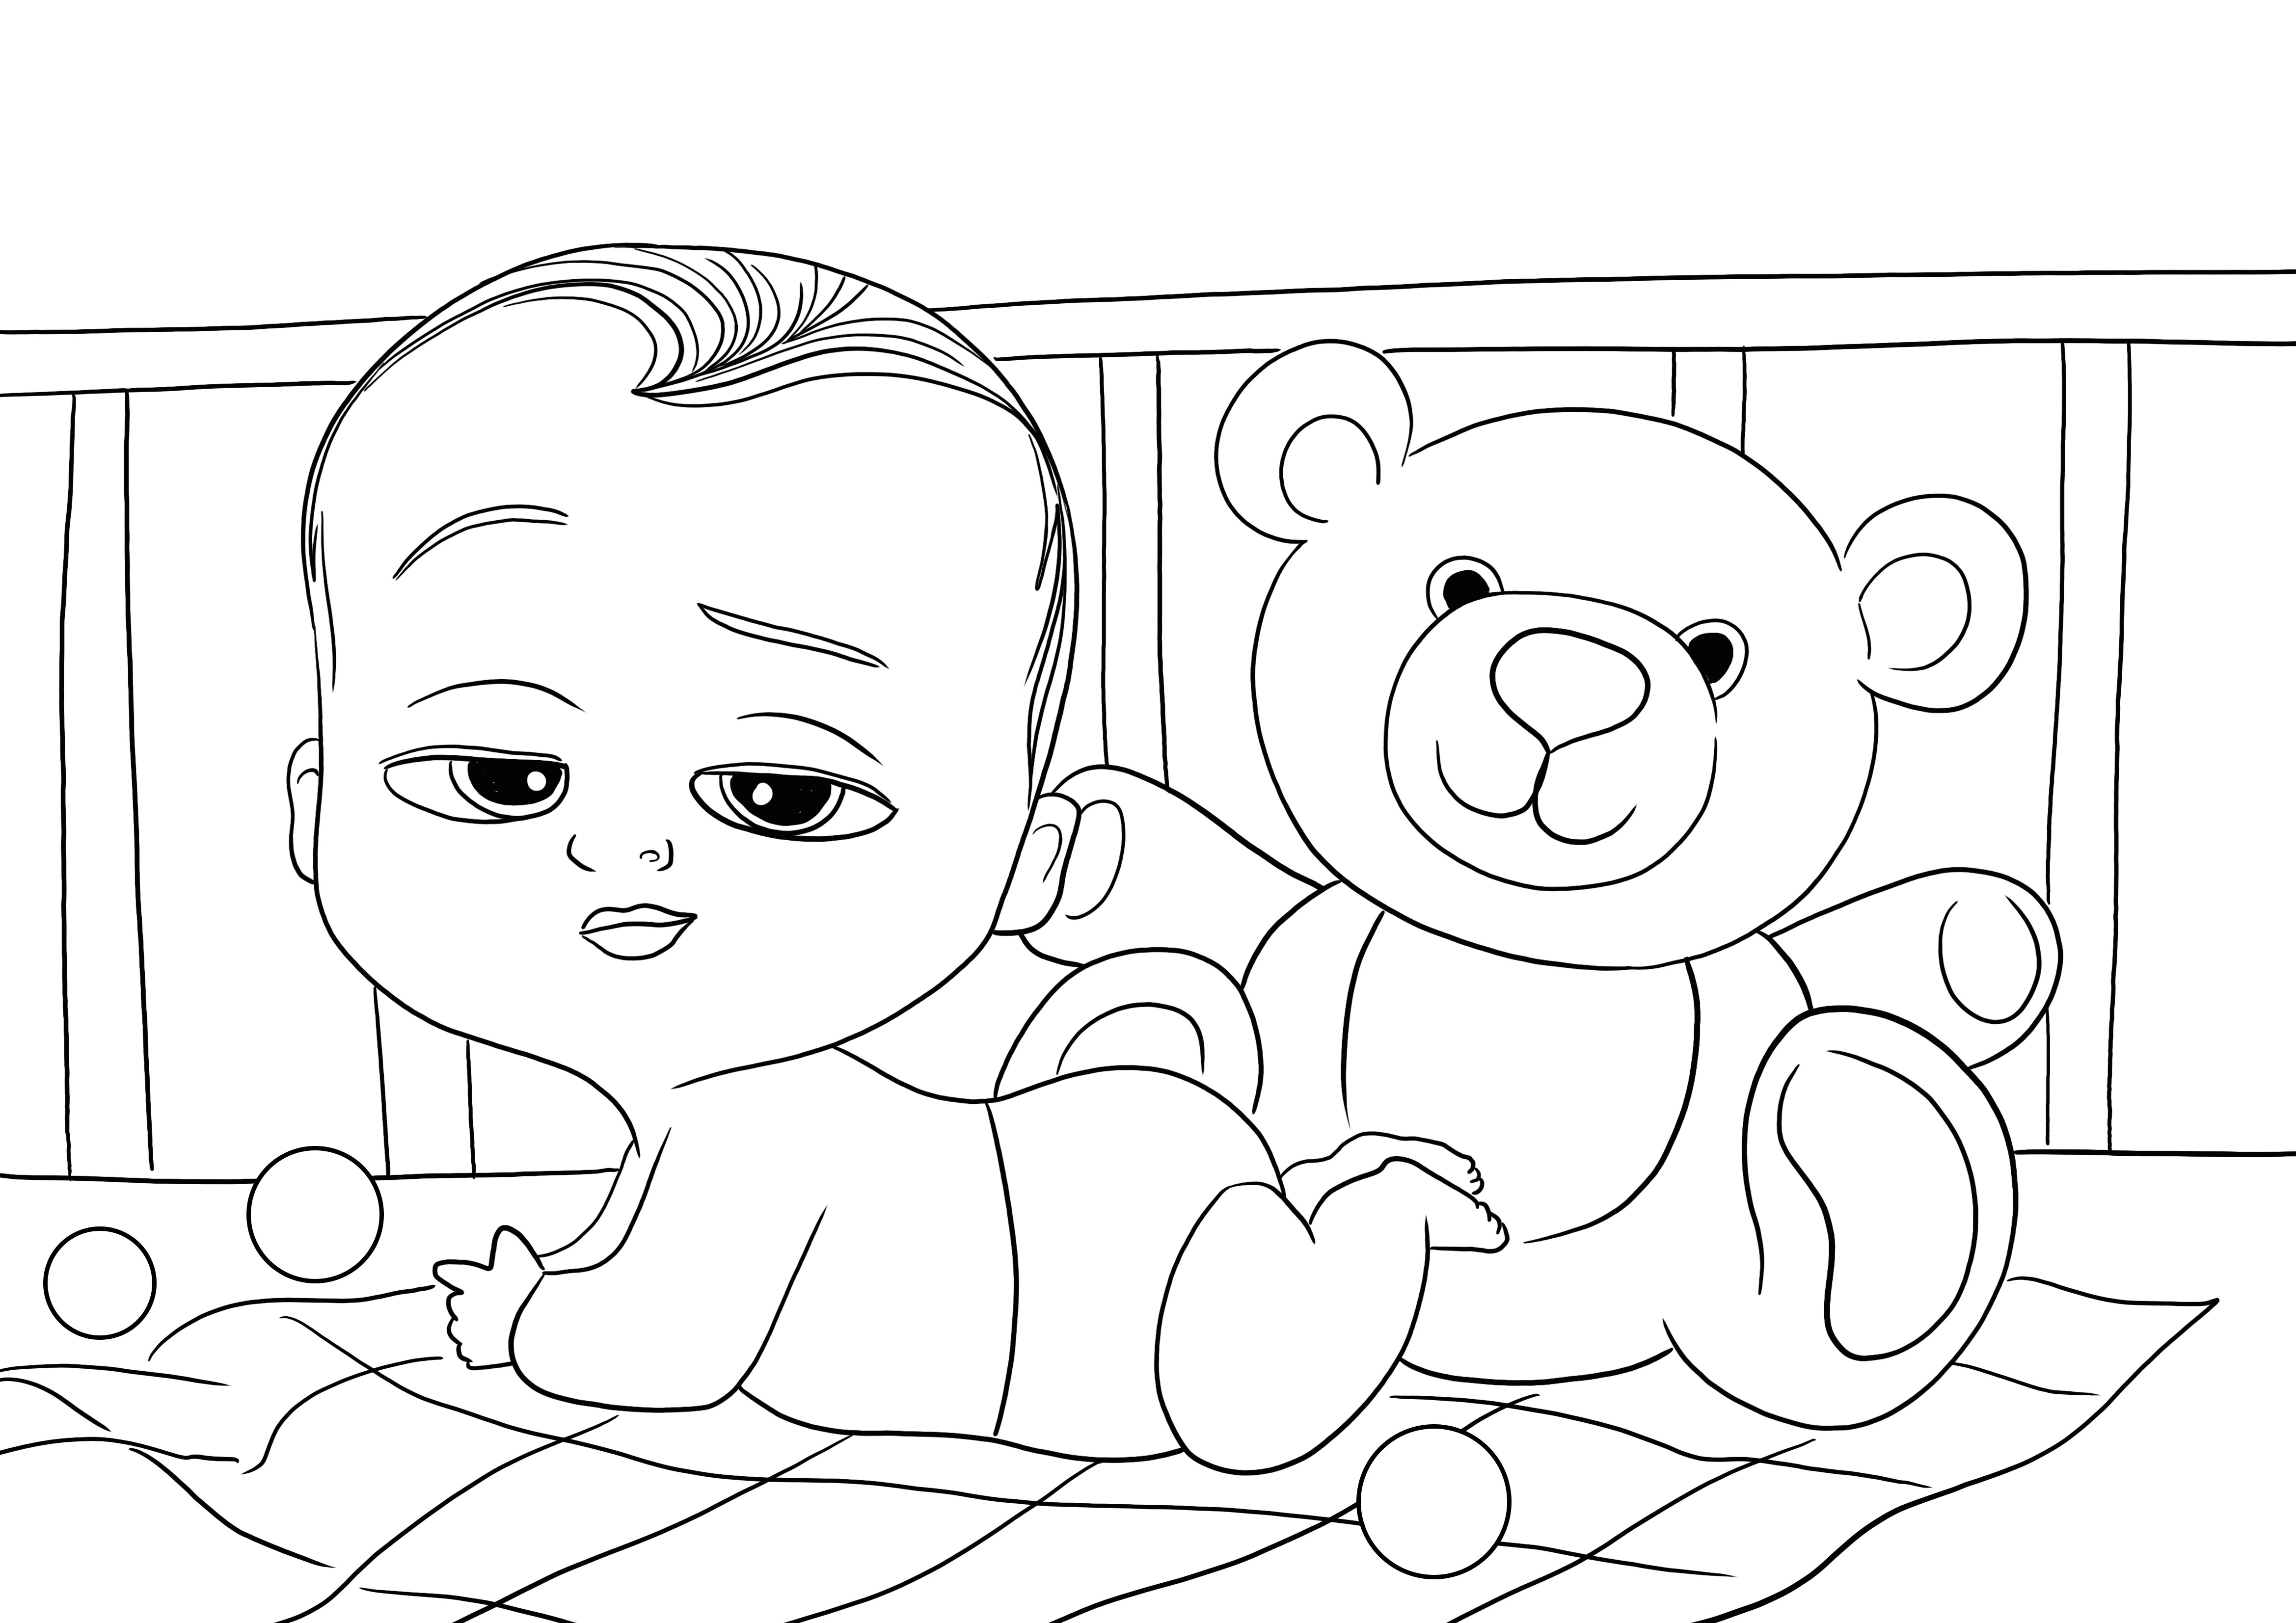 Kostenloses Ausmalbild von Baby Boss und Teddybär zum Ausmalen herunterladen